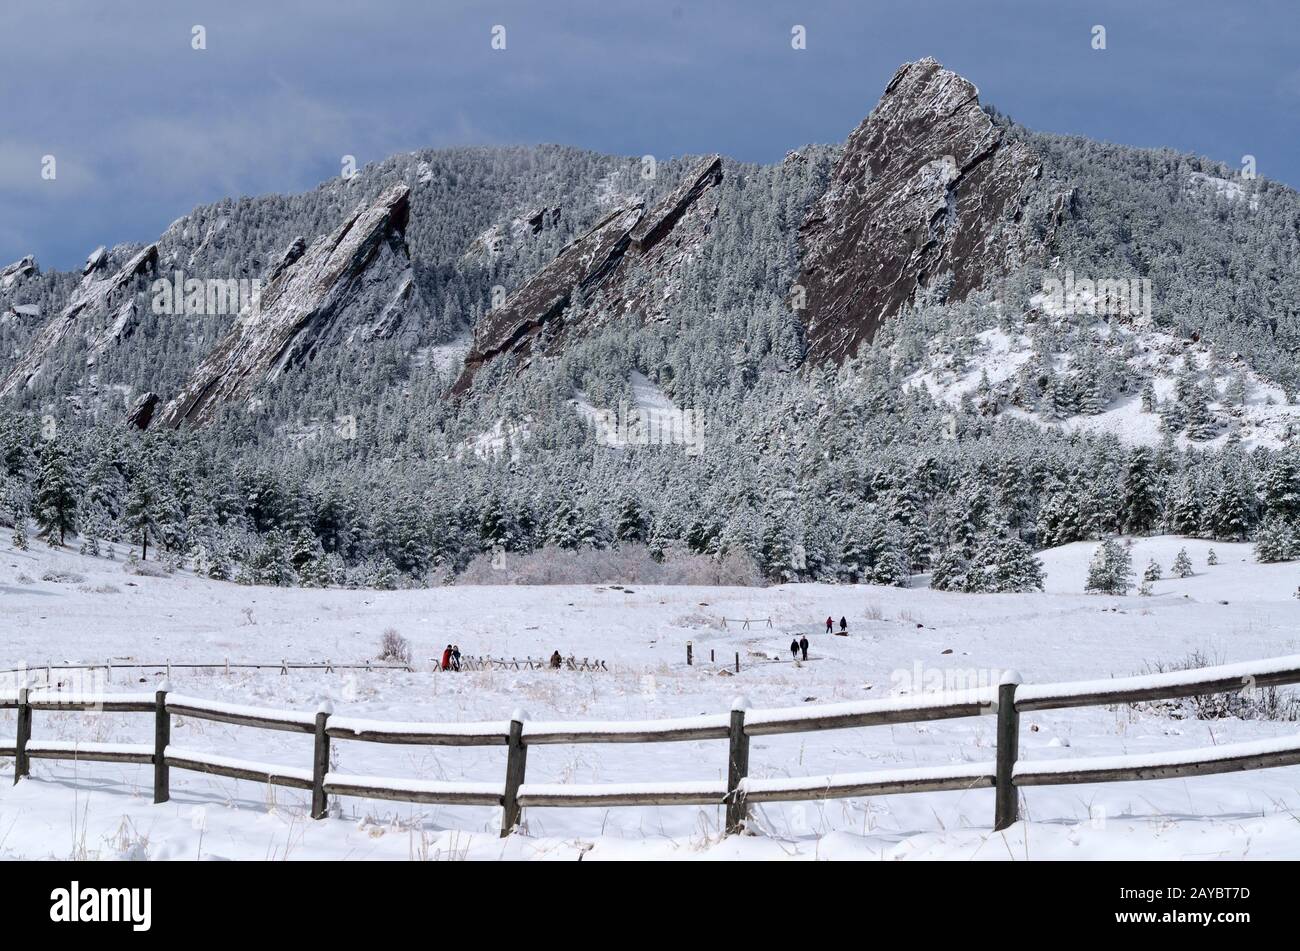 Die Flatirons auf dem Green Mountain sind das kultige Symbol von Boulder Colorado. Colorado Chautauqua National Historic Landmark. Stockfoto